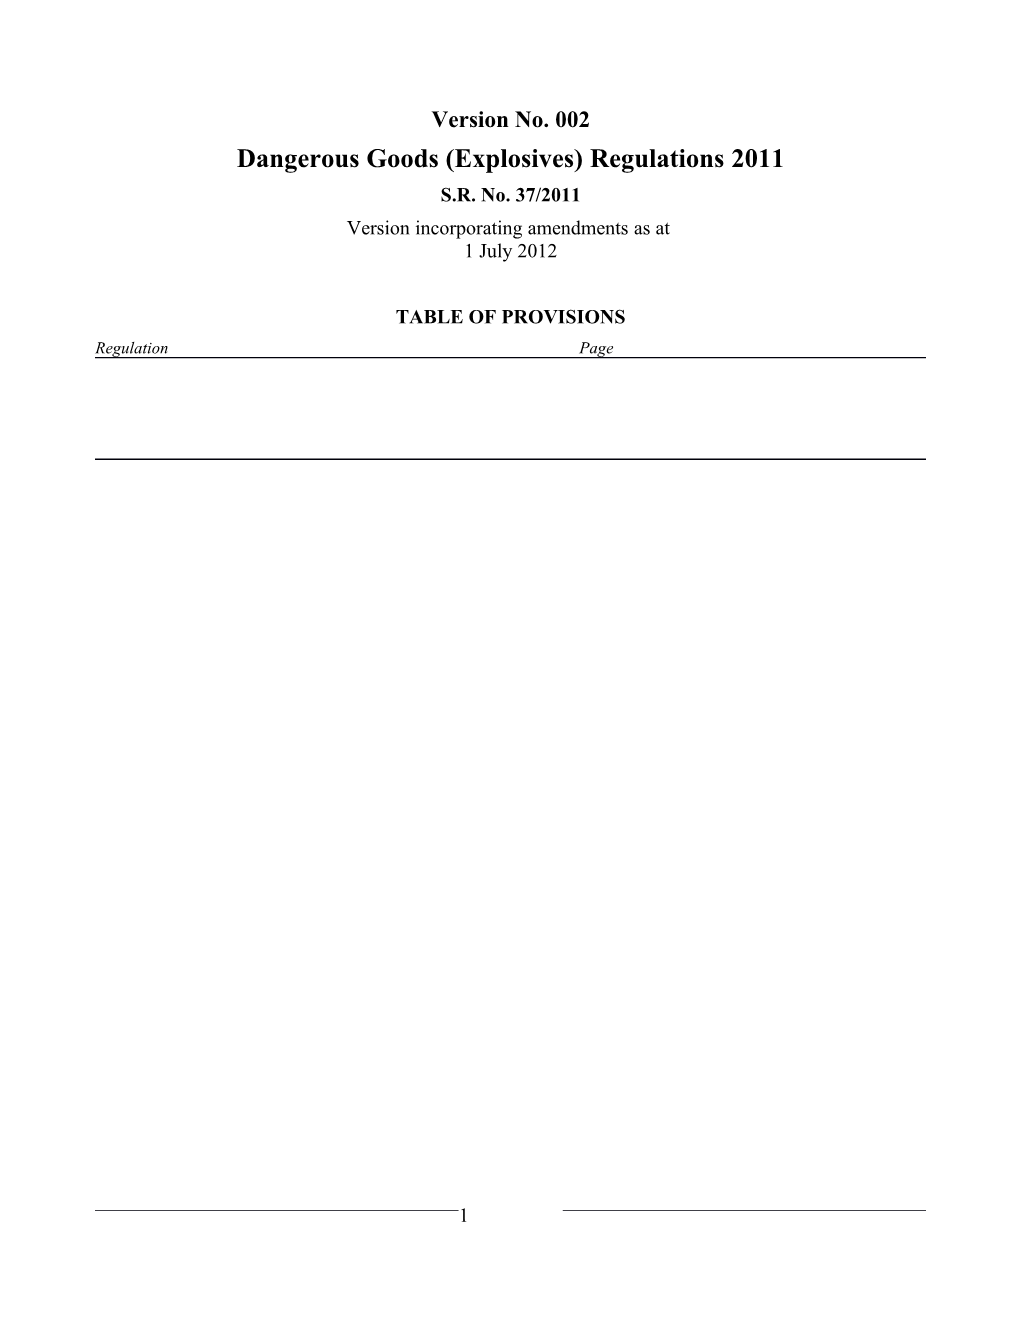 Dangerous Goods (Explosives) Regulations 2011